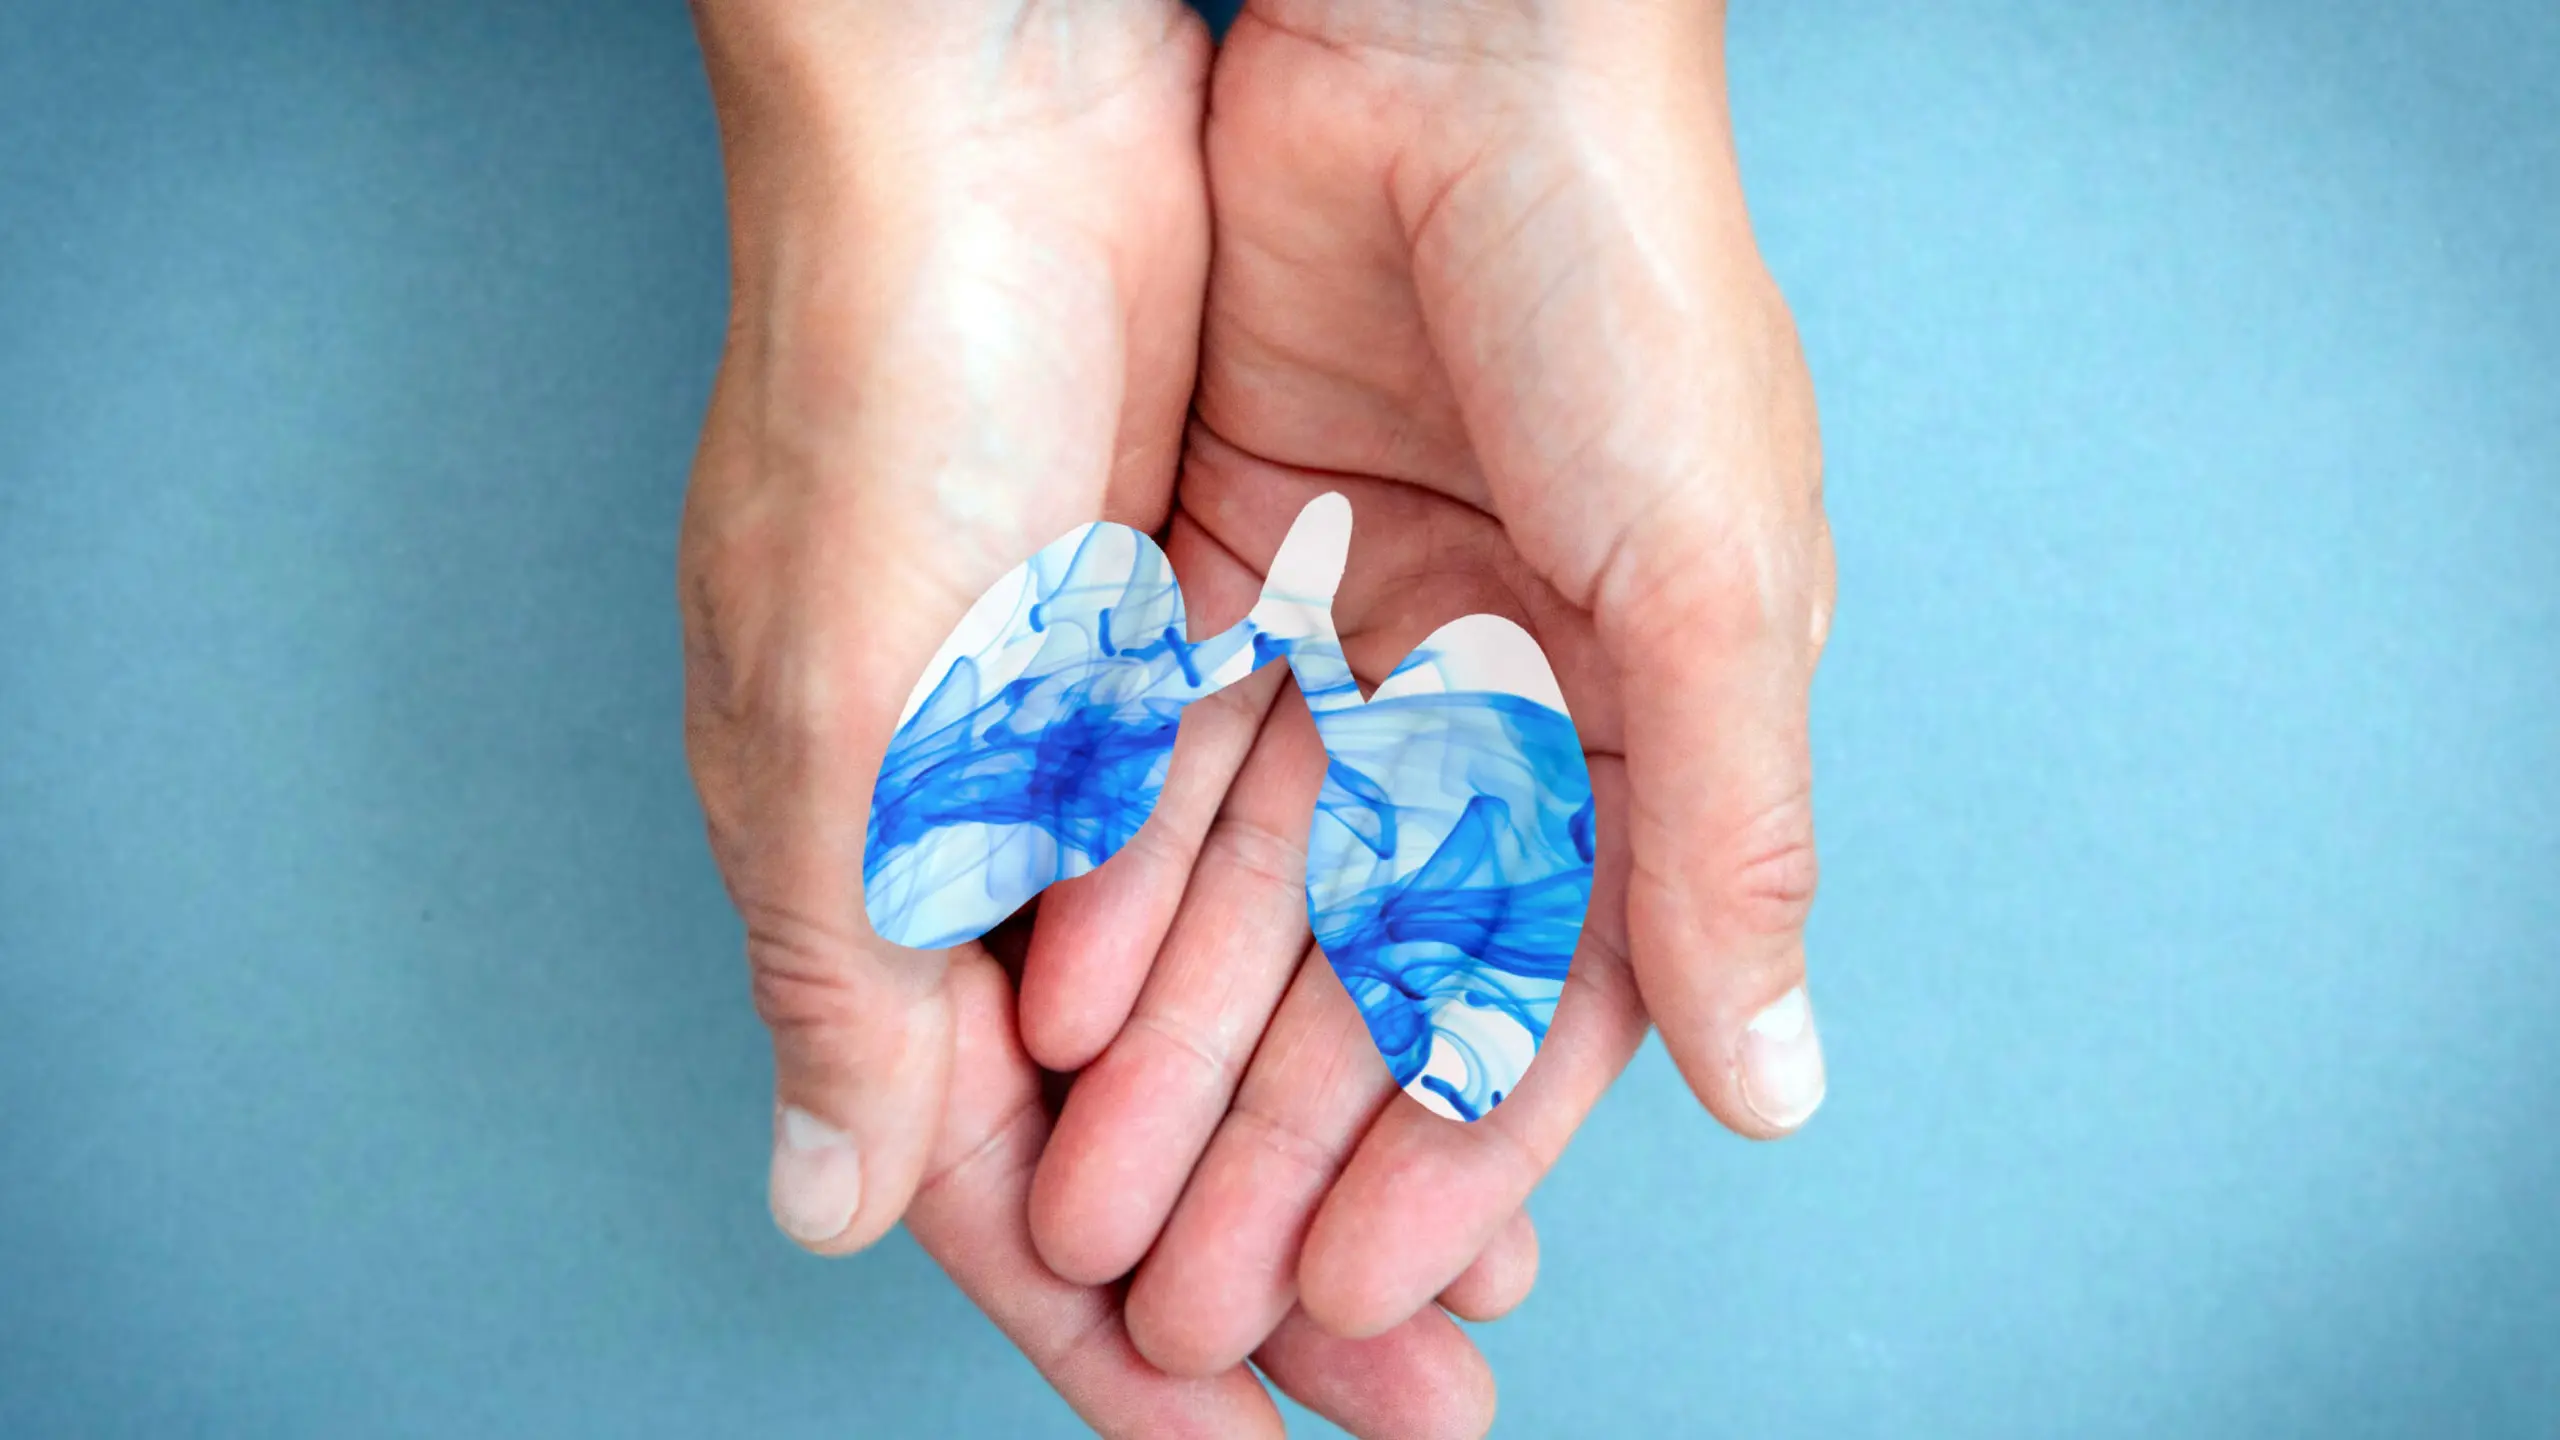 RS-Virus: Hände, die eine in klein abgebildete Lunge halten